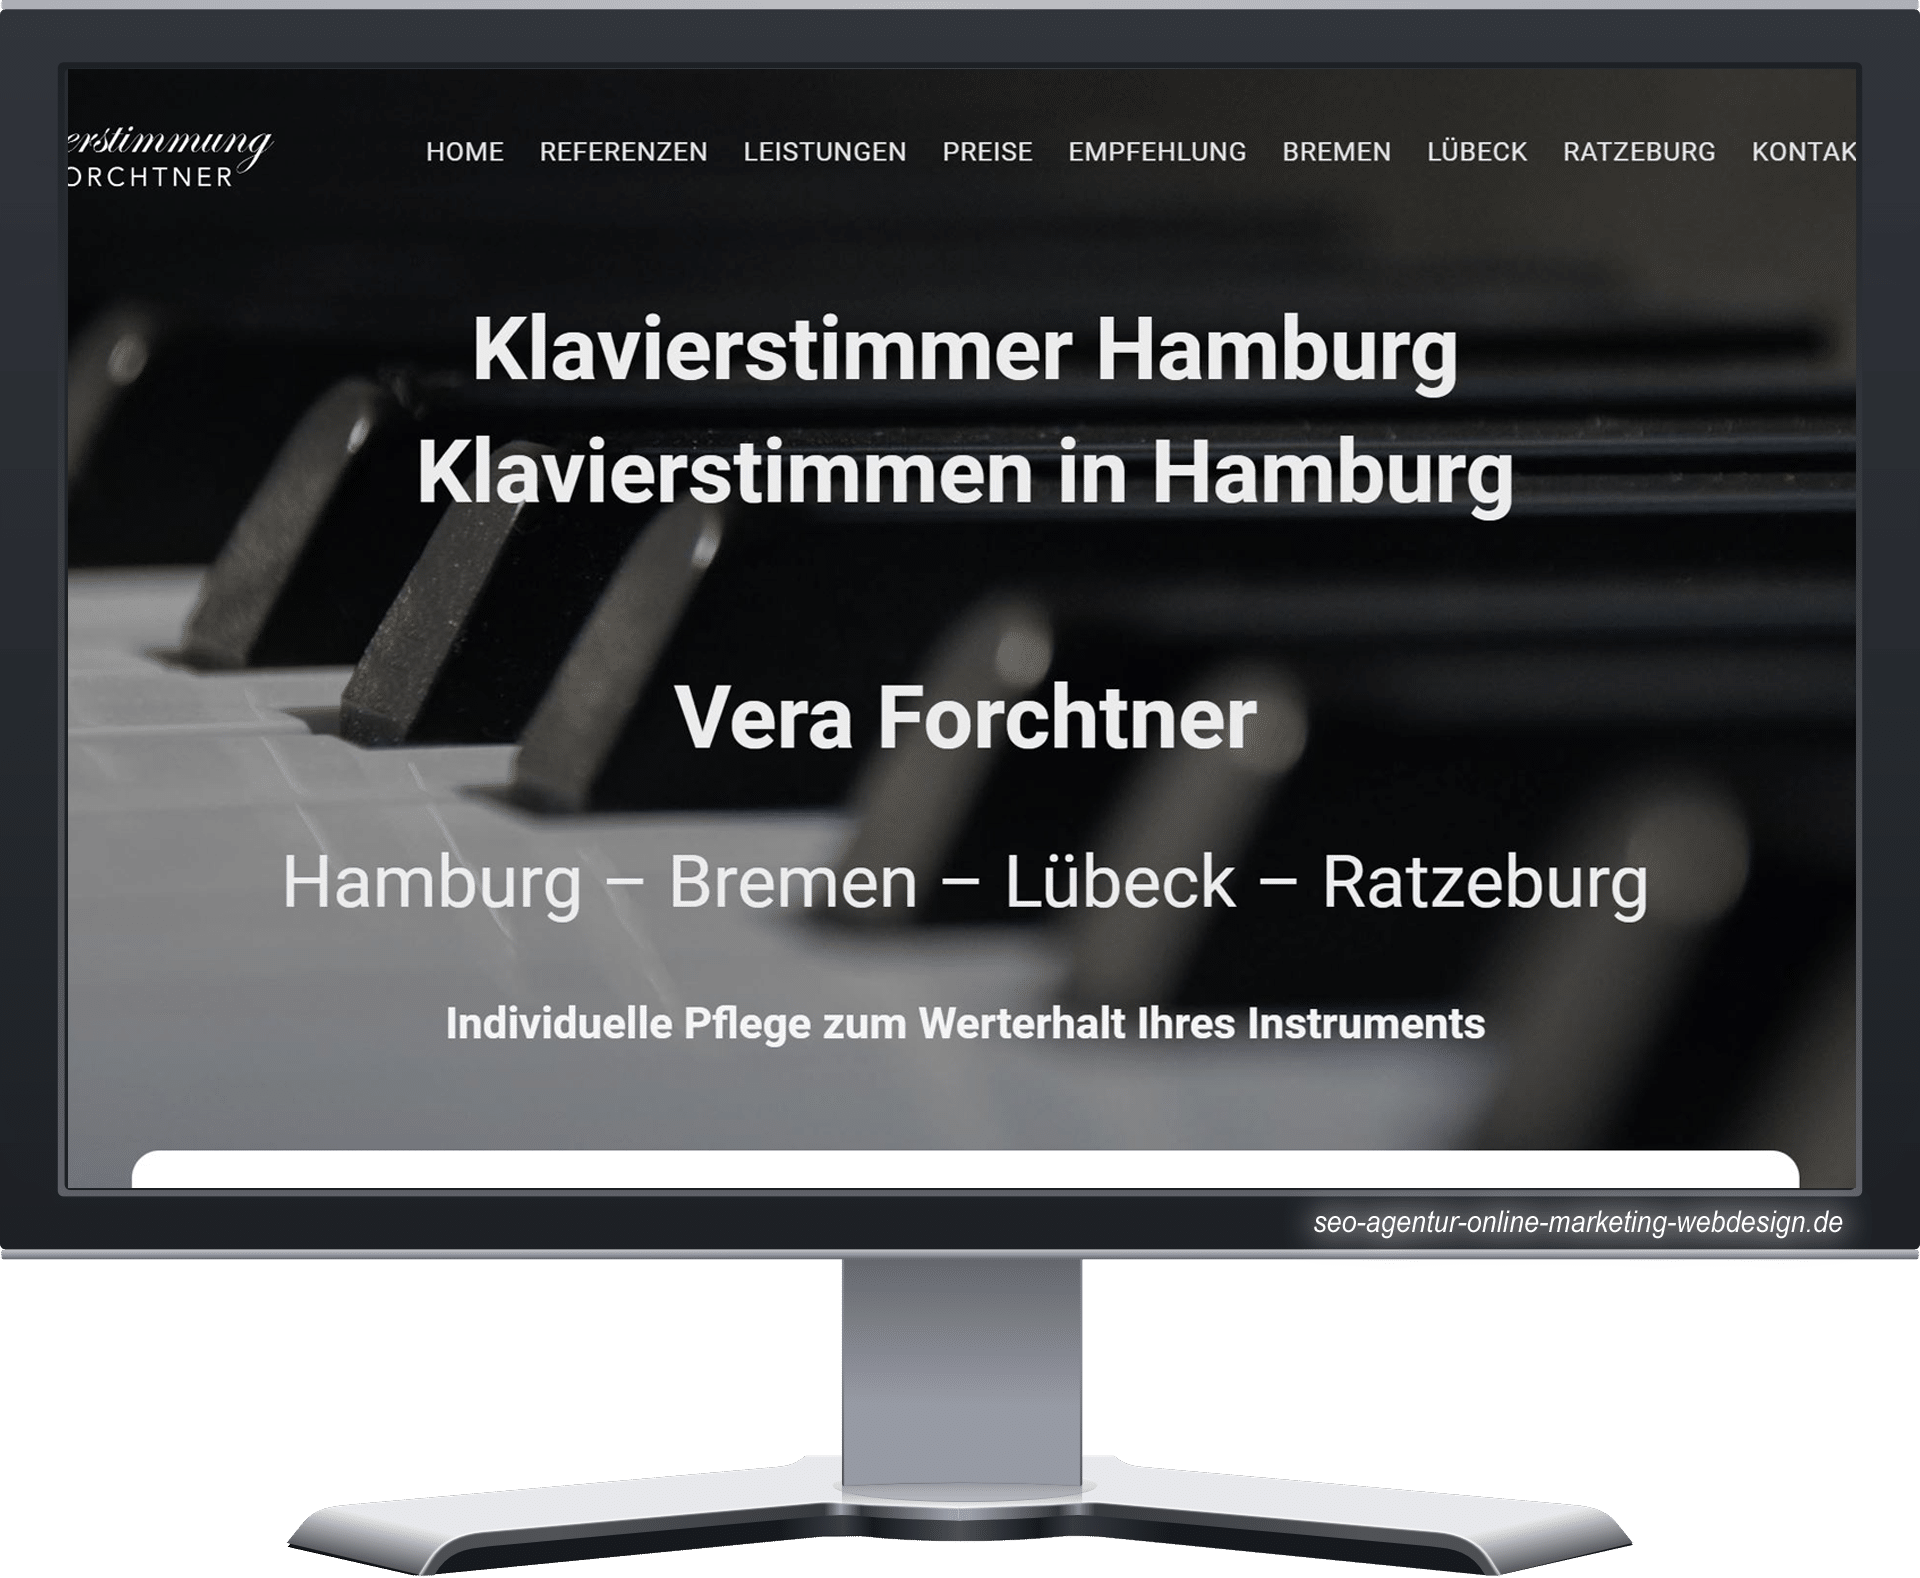 Case Study Klavierstimmer Hamburg